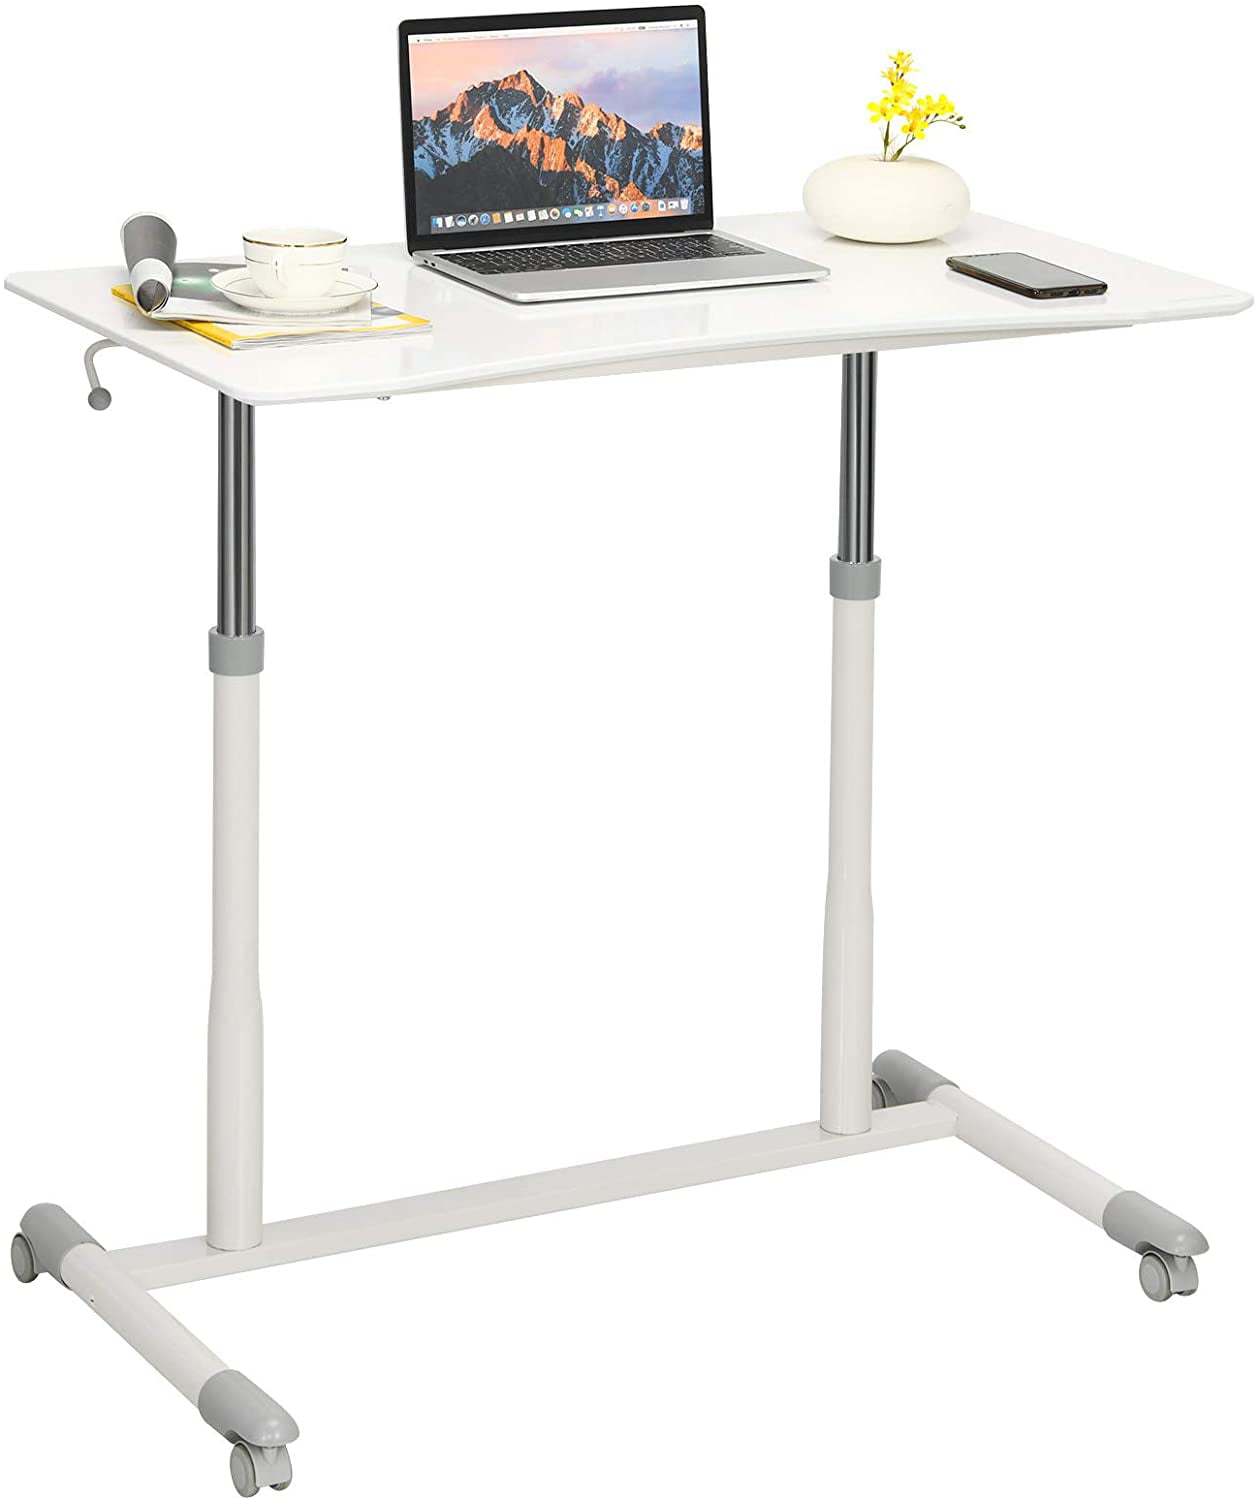 CF92 Ergo Height Adjustable Desk